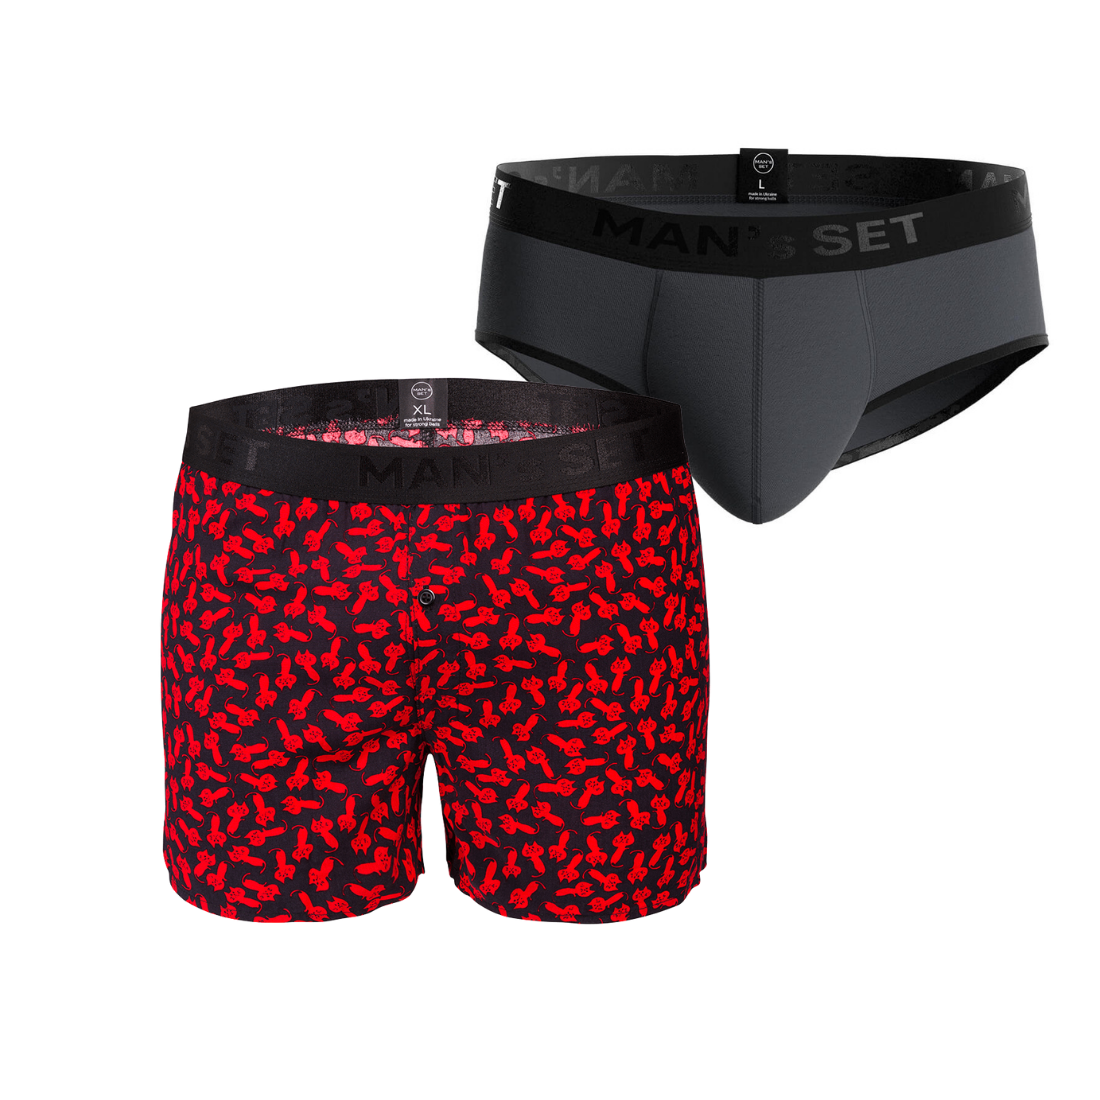 Комплект трусов MIX Briefs Shorts Black Series, 2шт MansSet - Фото 3